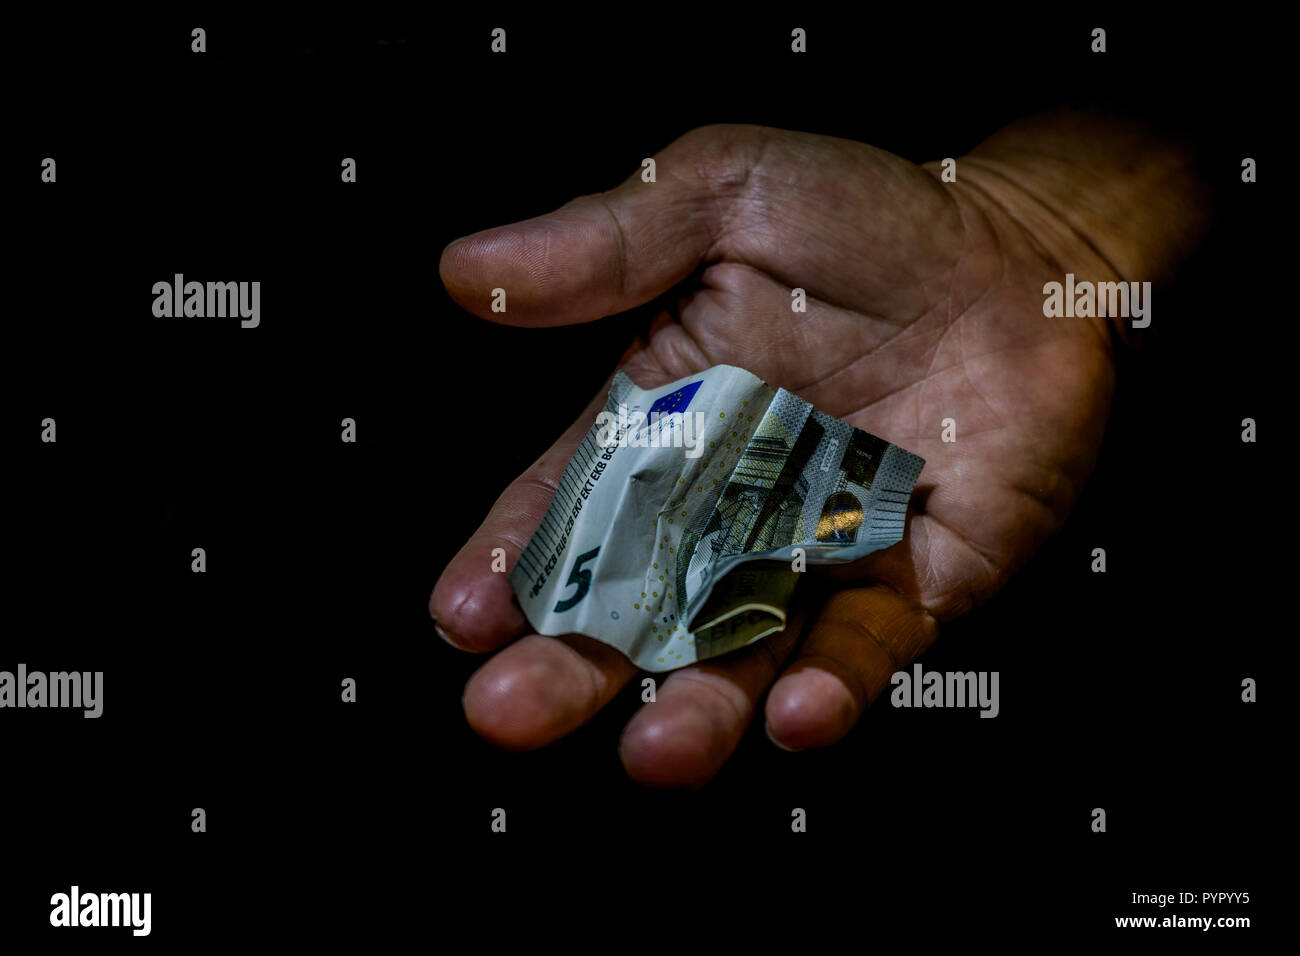 Spiegazzati cinque euro bill in mano di una persona isolata su nero. Concetto di accattonaggio per lasciare, povero piccolo salariale, donazioni. Foto Stock